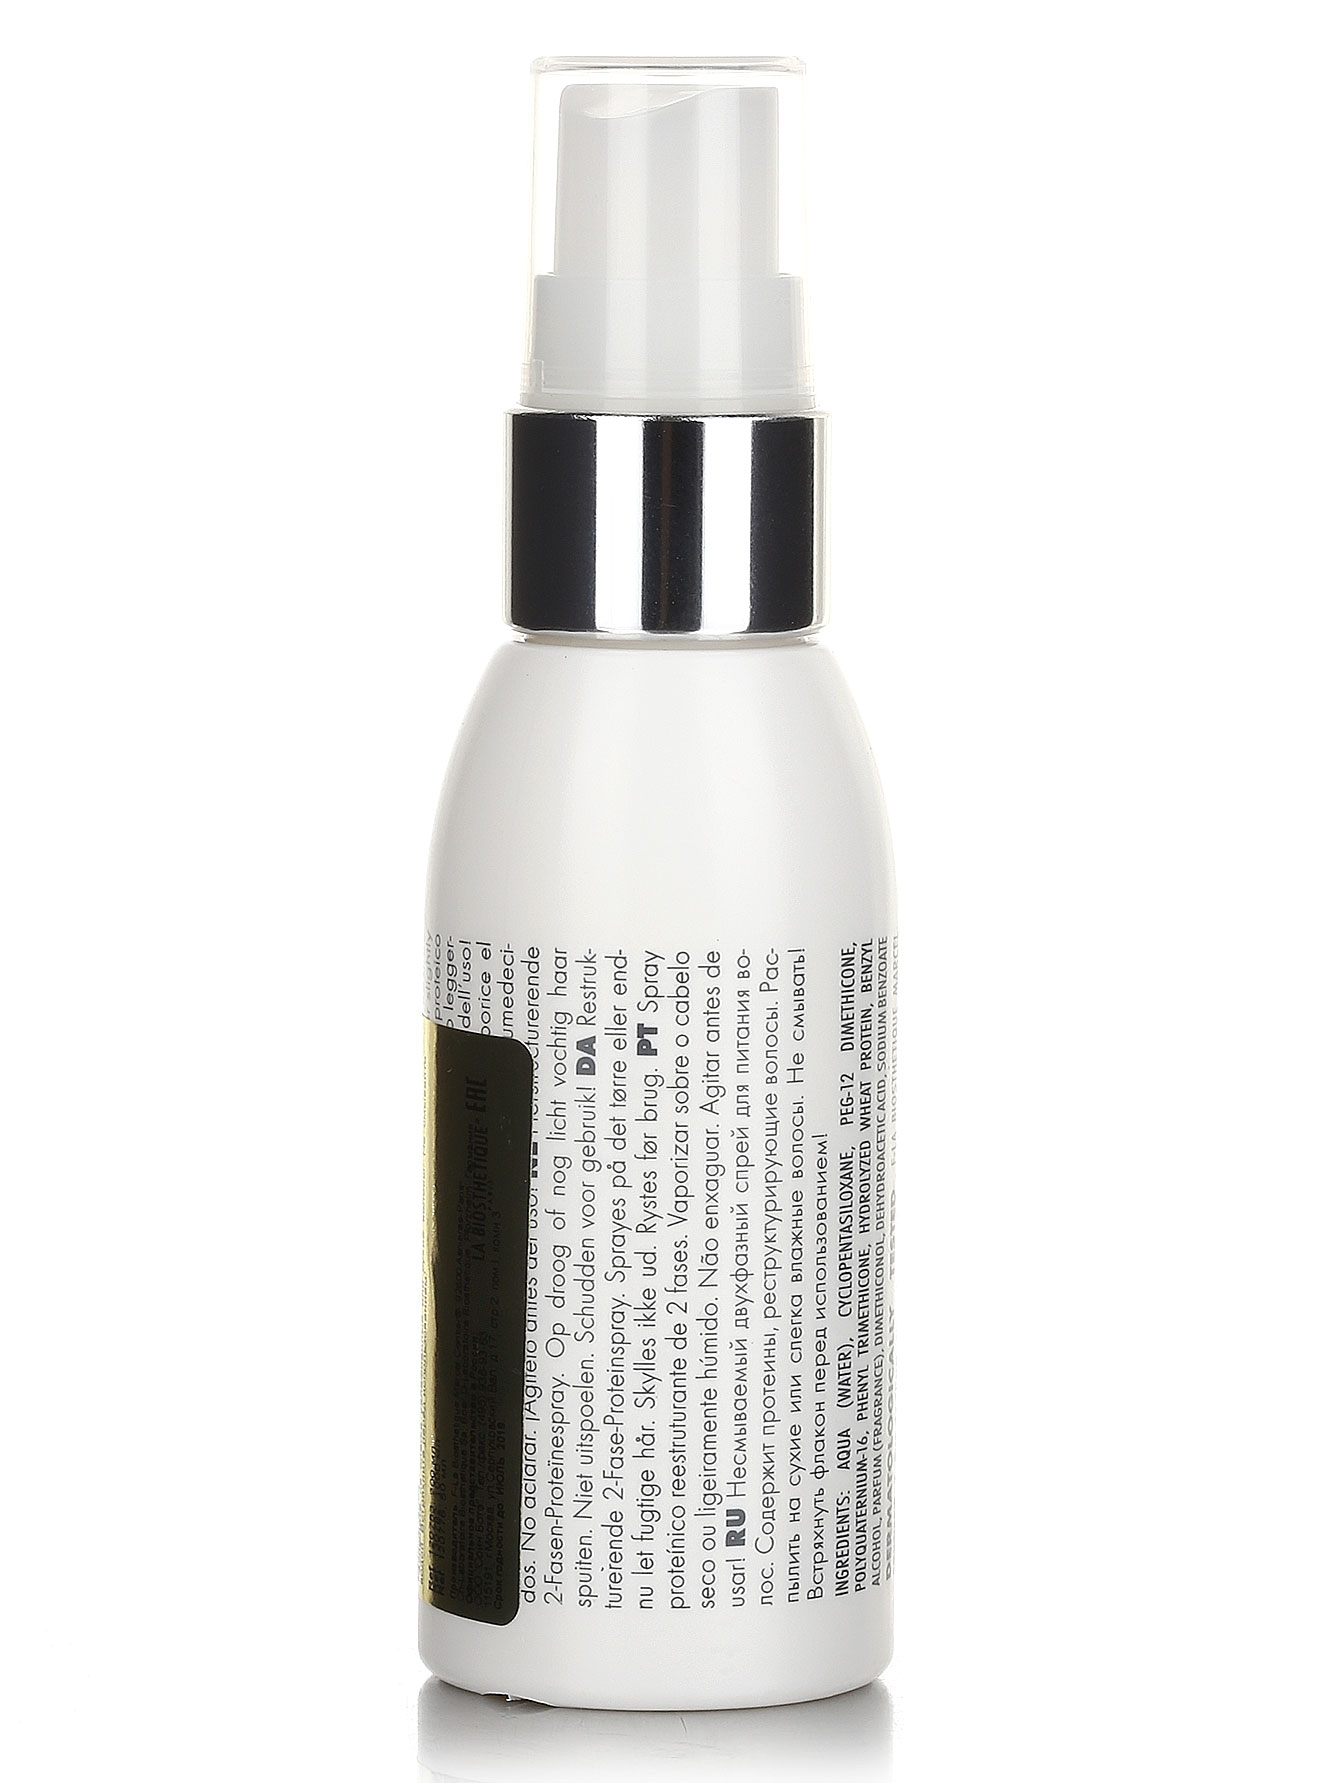  Несмываемый 2-фазный спрей для питания волос - Hair Care, 50ml - Модель Верх-Низ